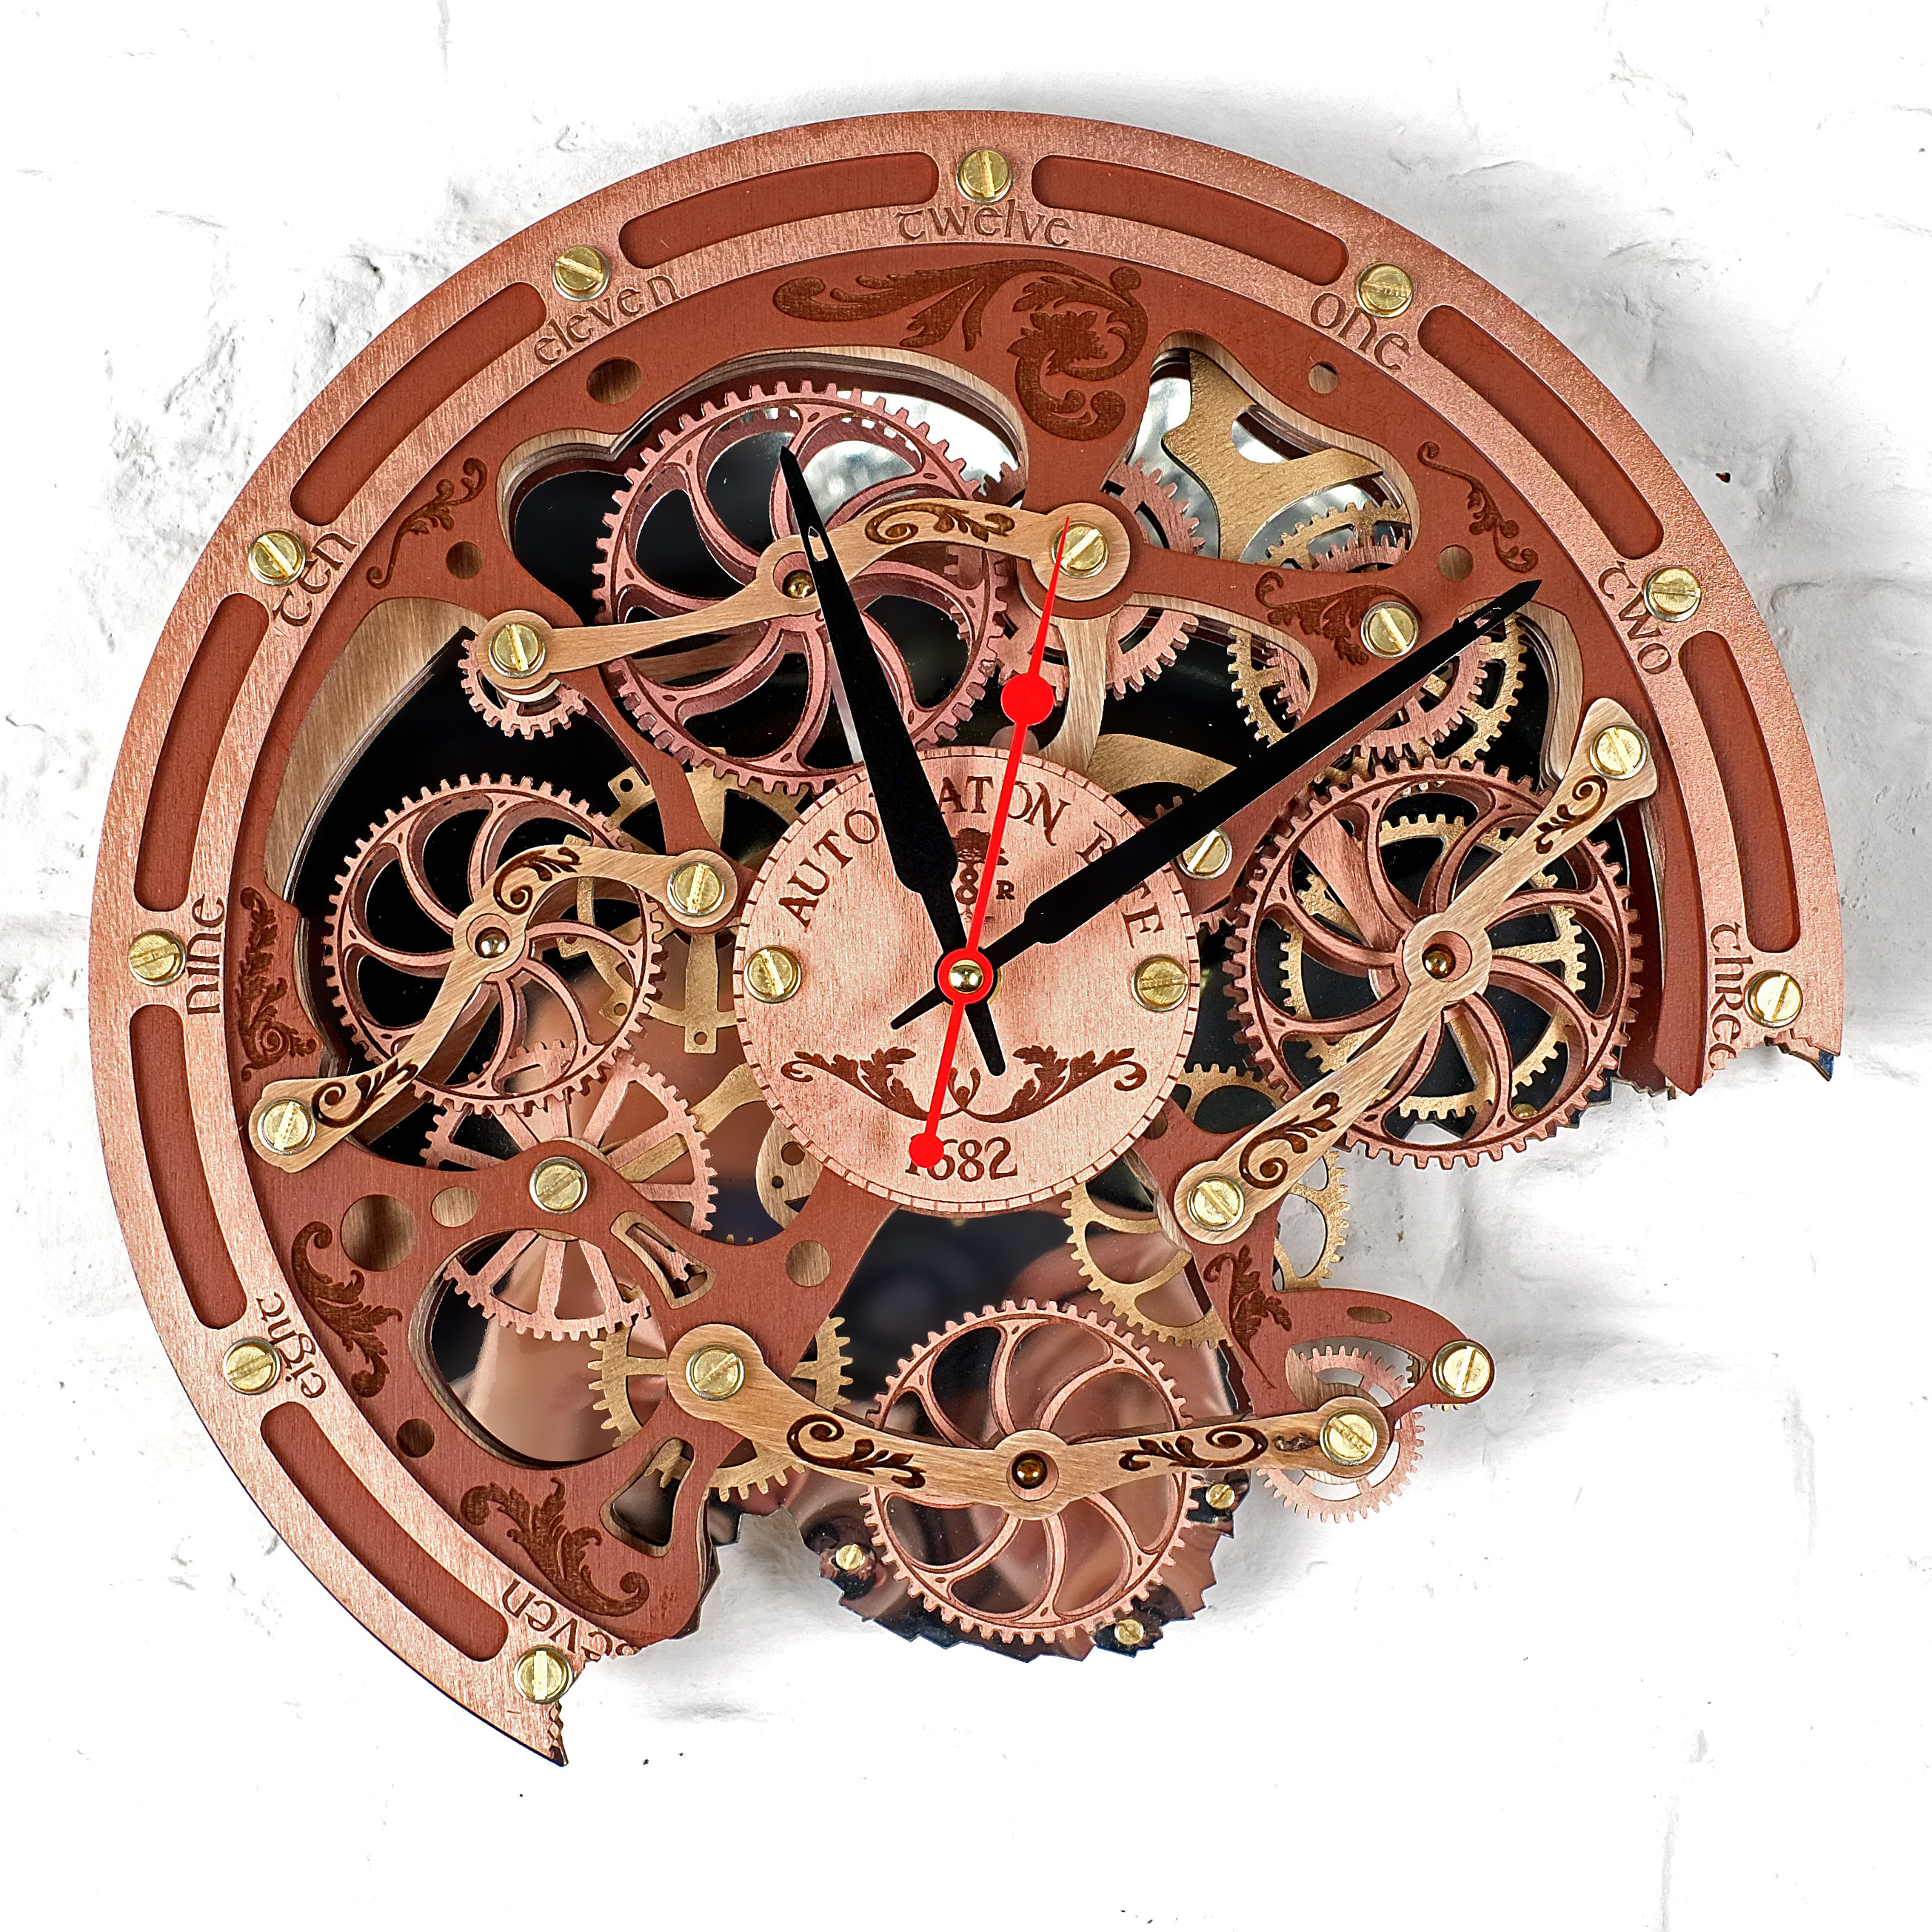 Ручной механизм часов. Часы настенные автоматон bite. Часы настенные автоматон bite 1682 метал. Часы WOODANDROOT. Часы с механизмом.